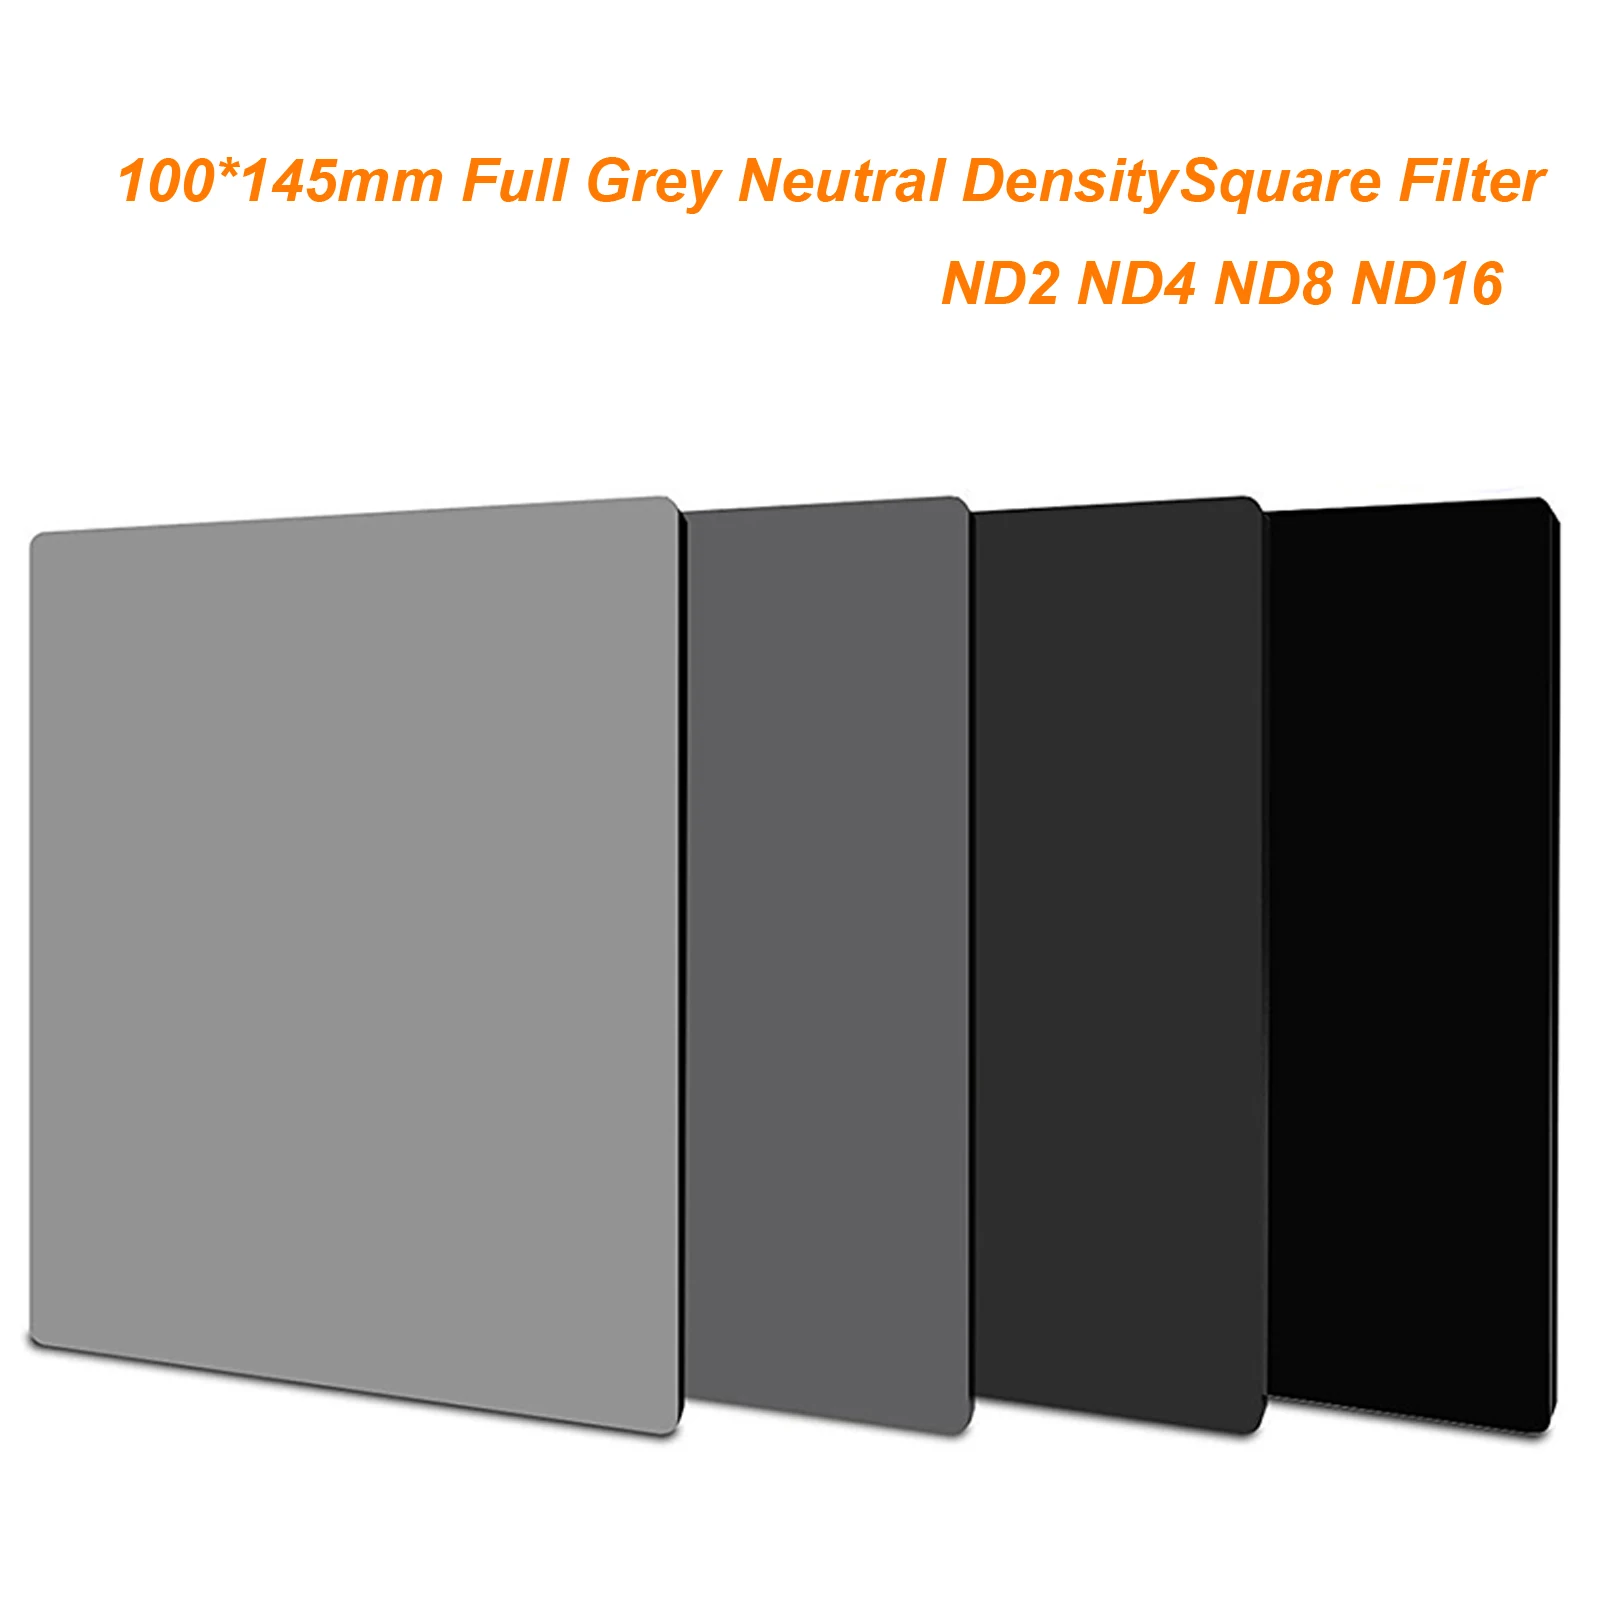 145 мм* 100 мм полный серый ND2 ND4 ND8 ND16 нейтральная плотность 100*145 мм квадратный фильтр полный серый для Lee Cokin Z серии